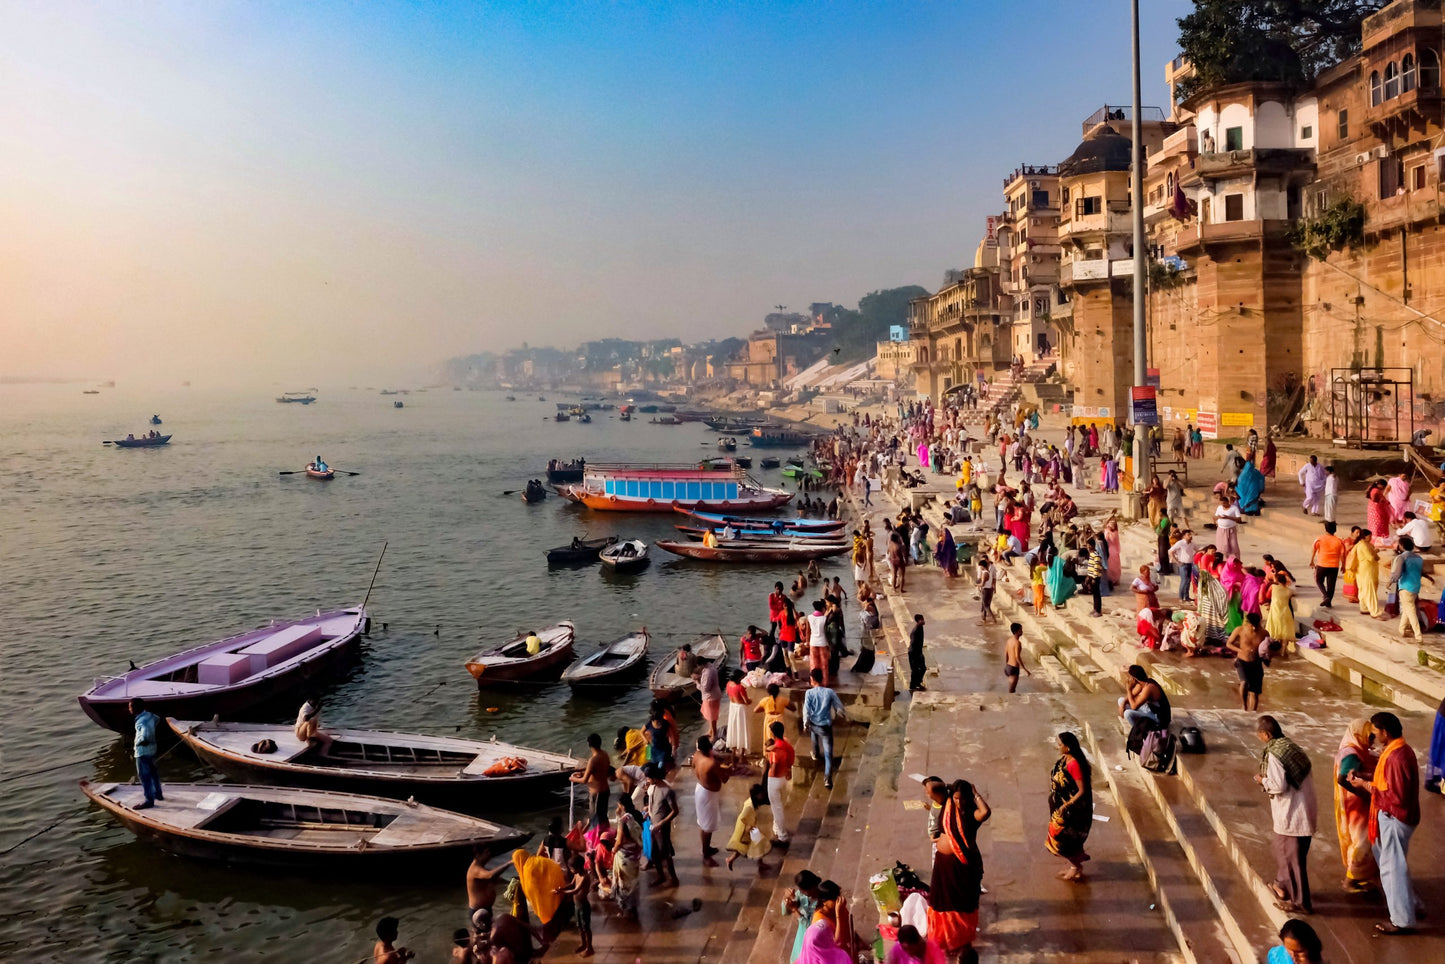 A13E: (5 Ngày) Varanasi huyền thoại, ẤN ĐỘ - Khám phá những thành phố cổ nhất, nơi khai sinh của Phật giáo, Ấn Độ giáo và sông Hằng thiêng liêng